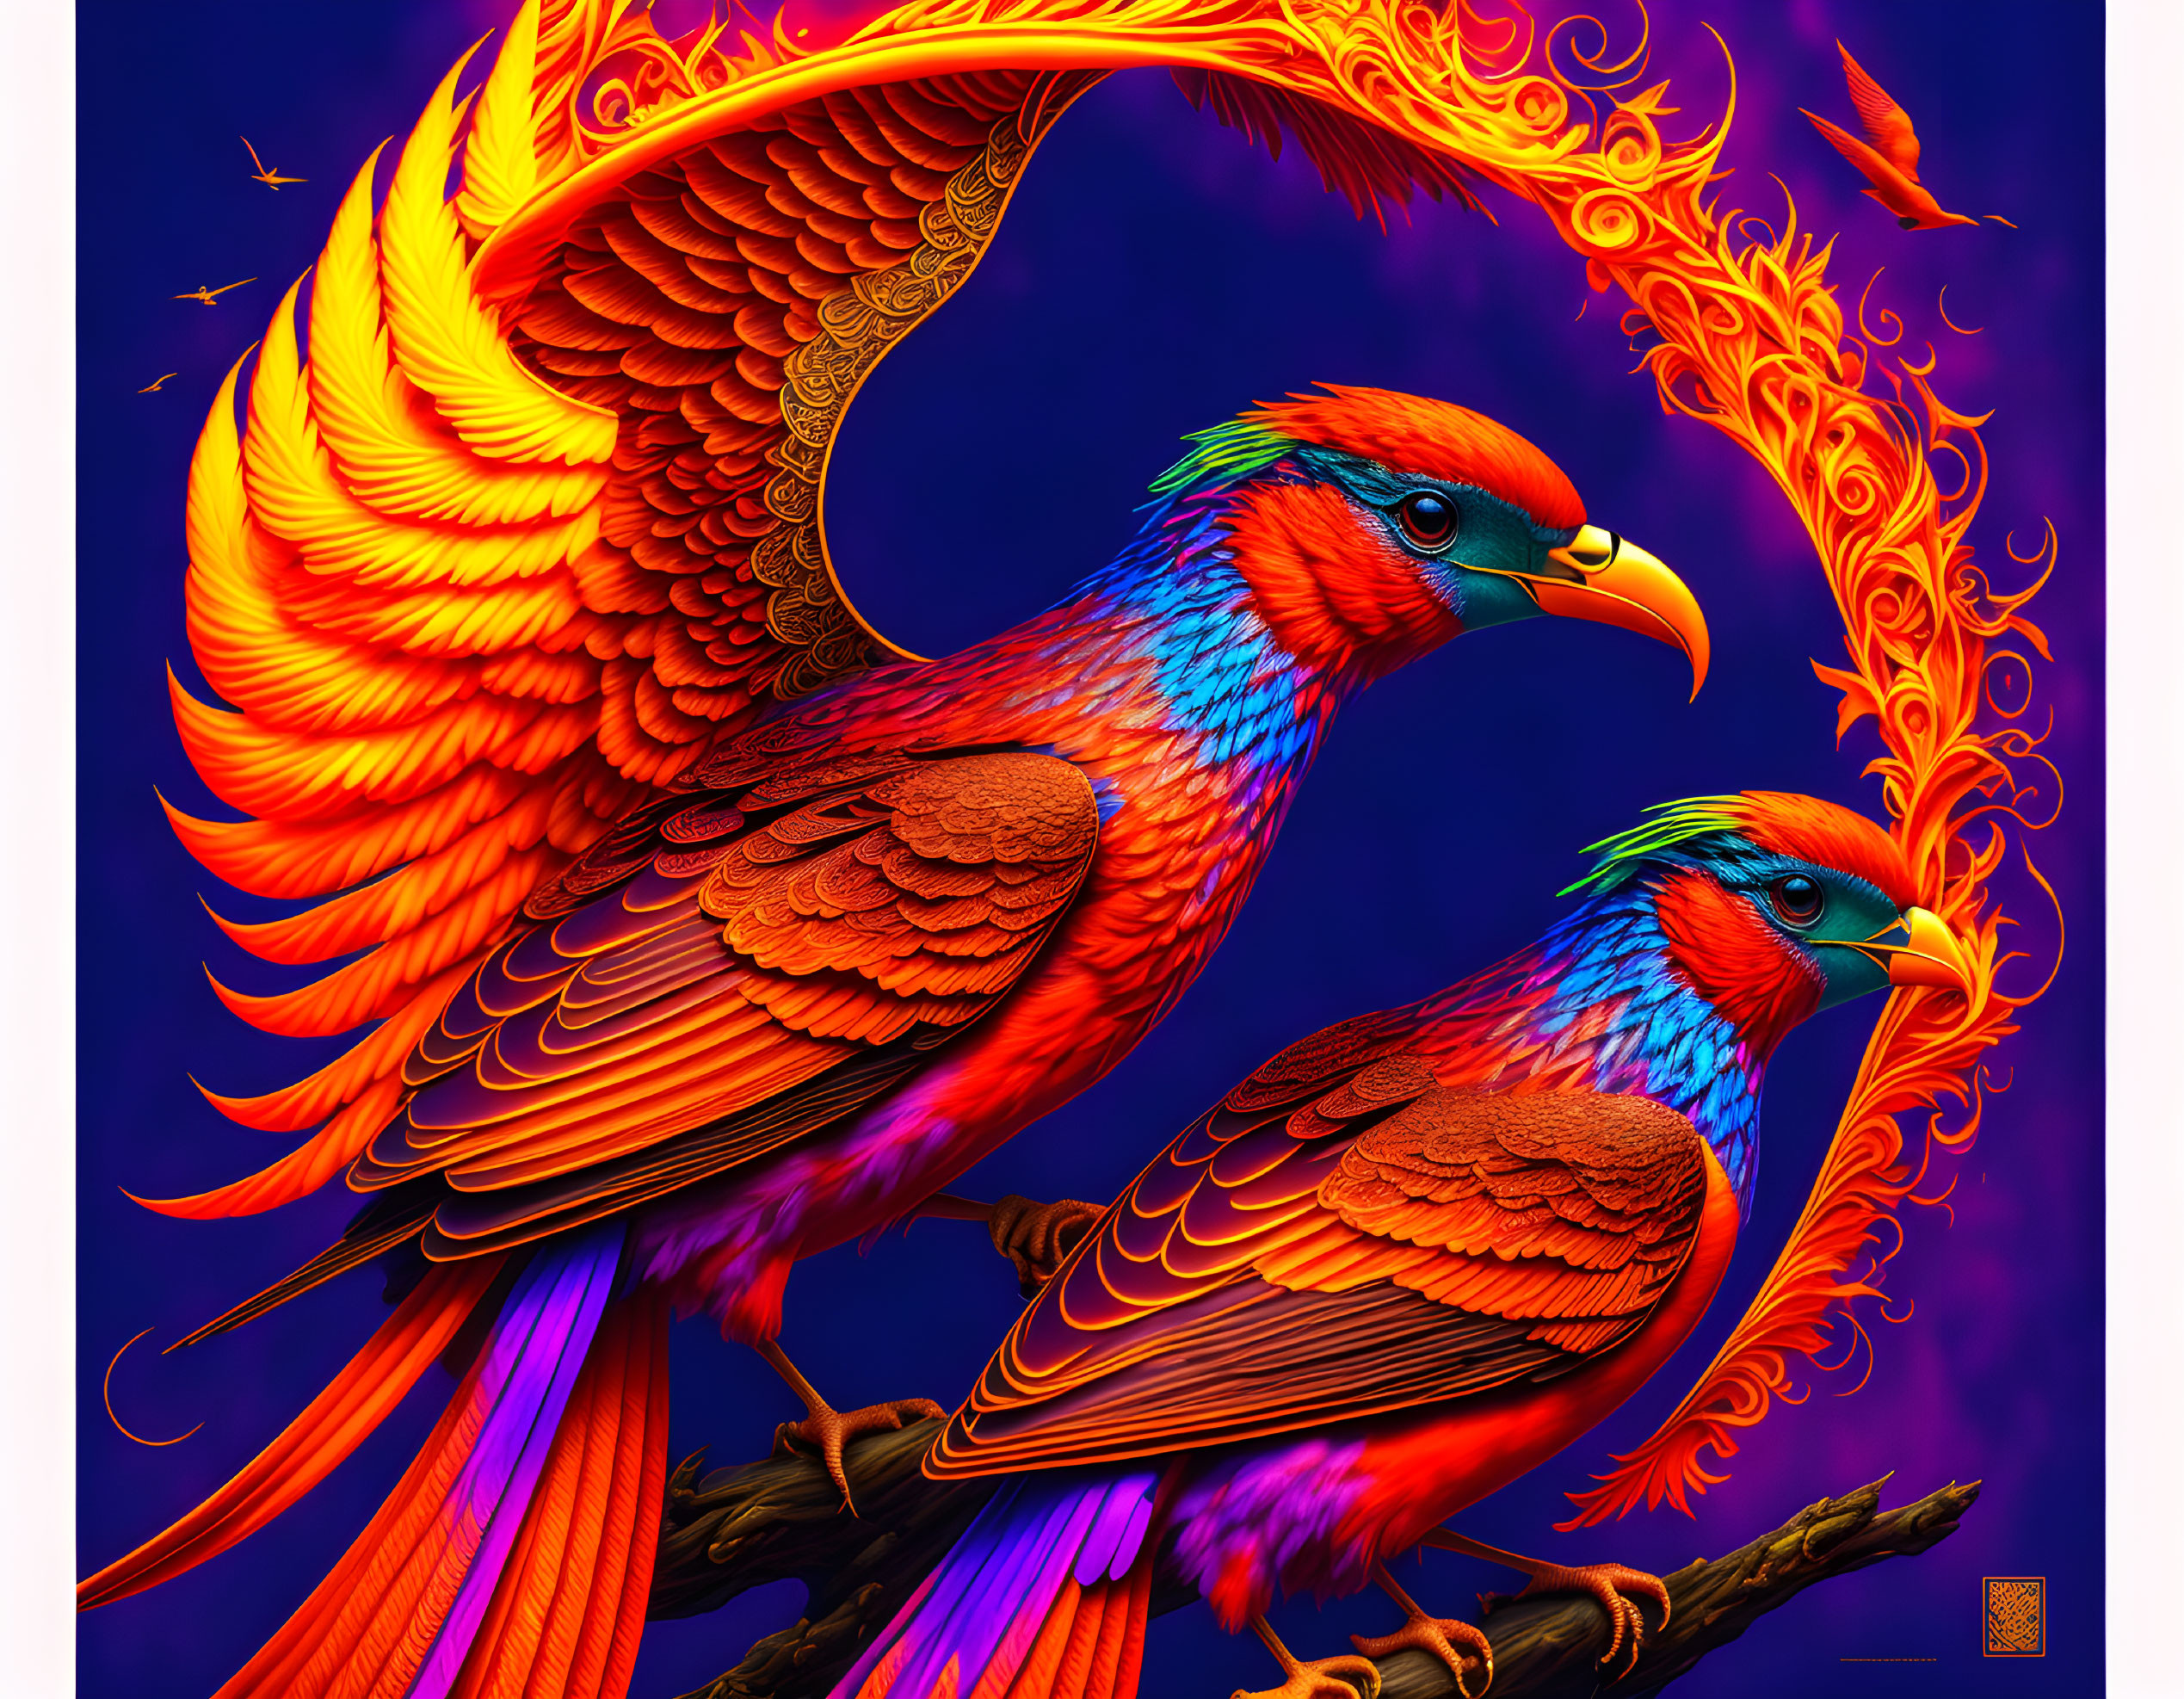 Birds of Fire